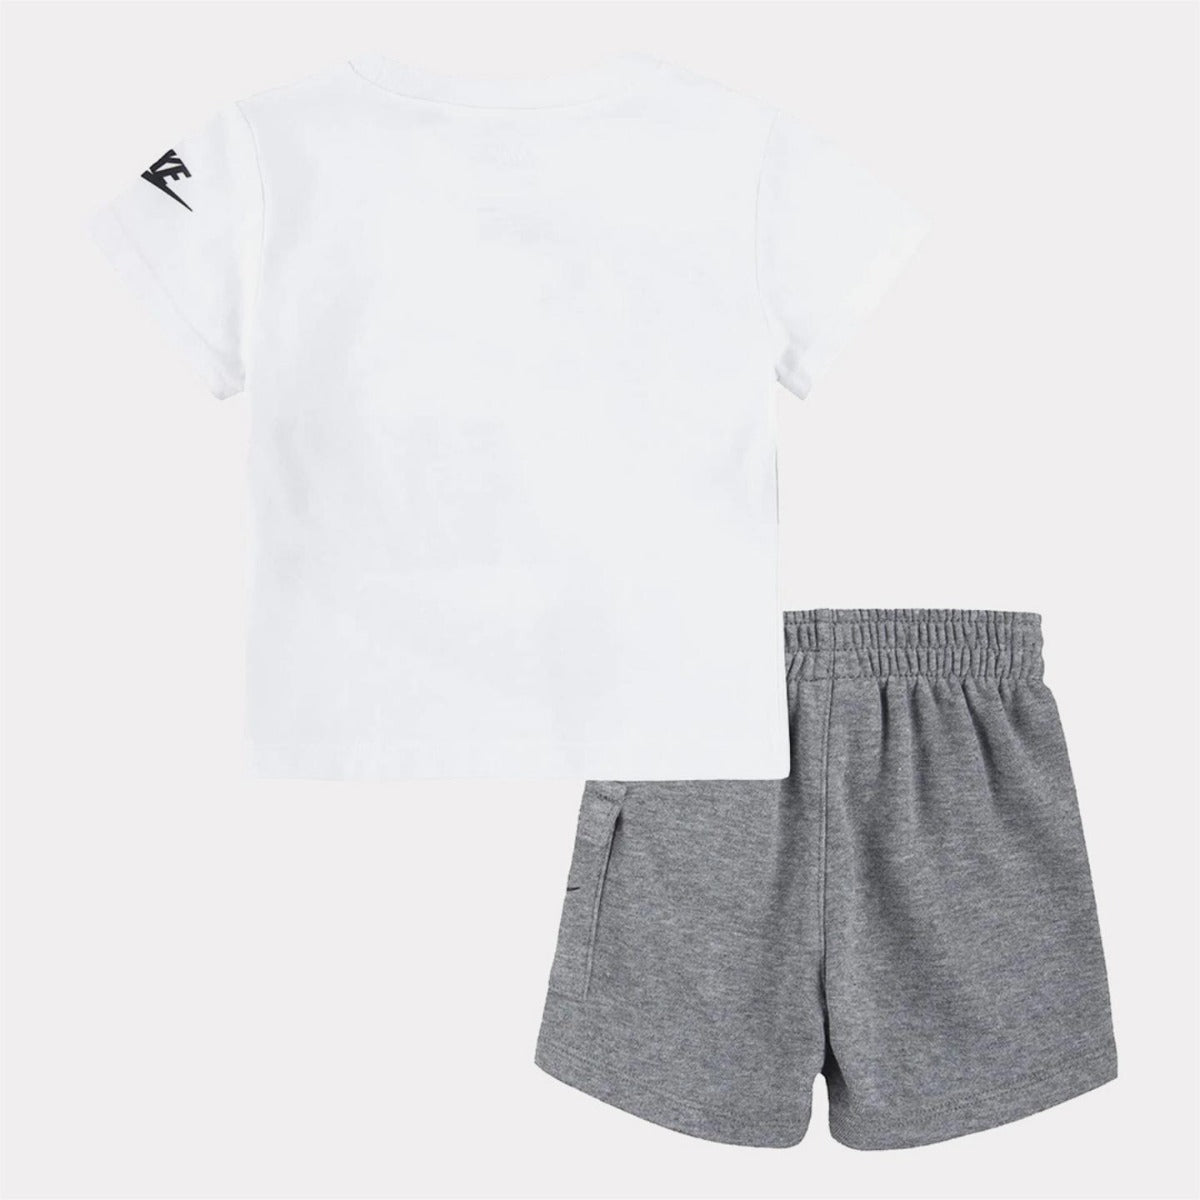 Ensemble T-shirt/Short Nike Bébé- Gris/Blanc/Noir